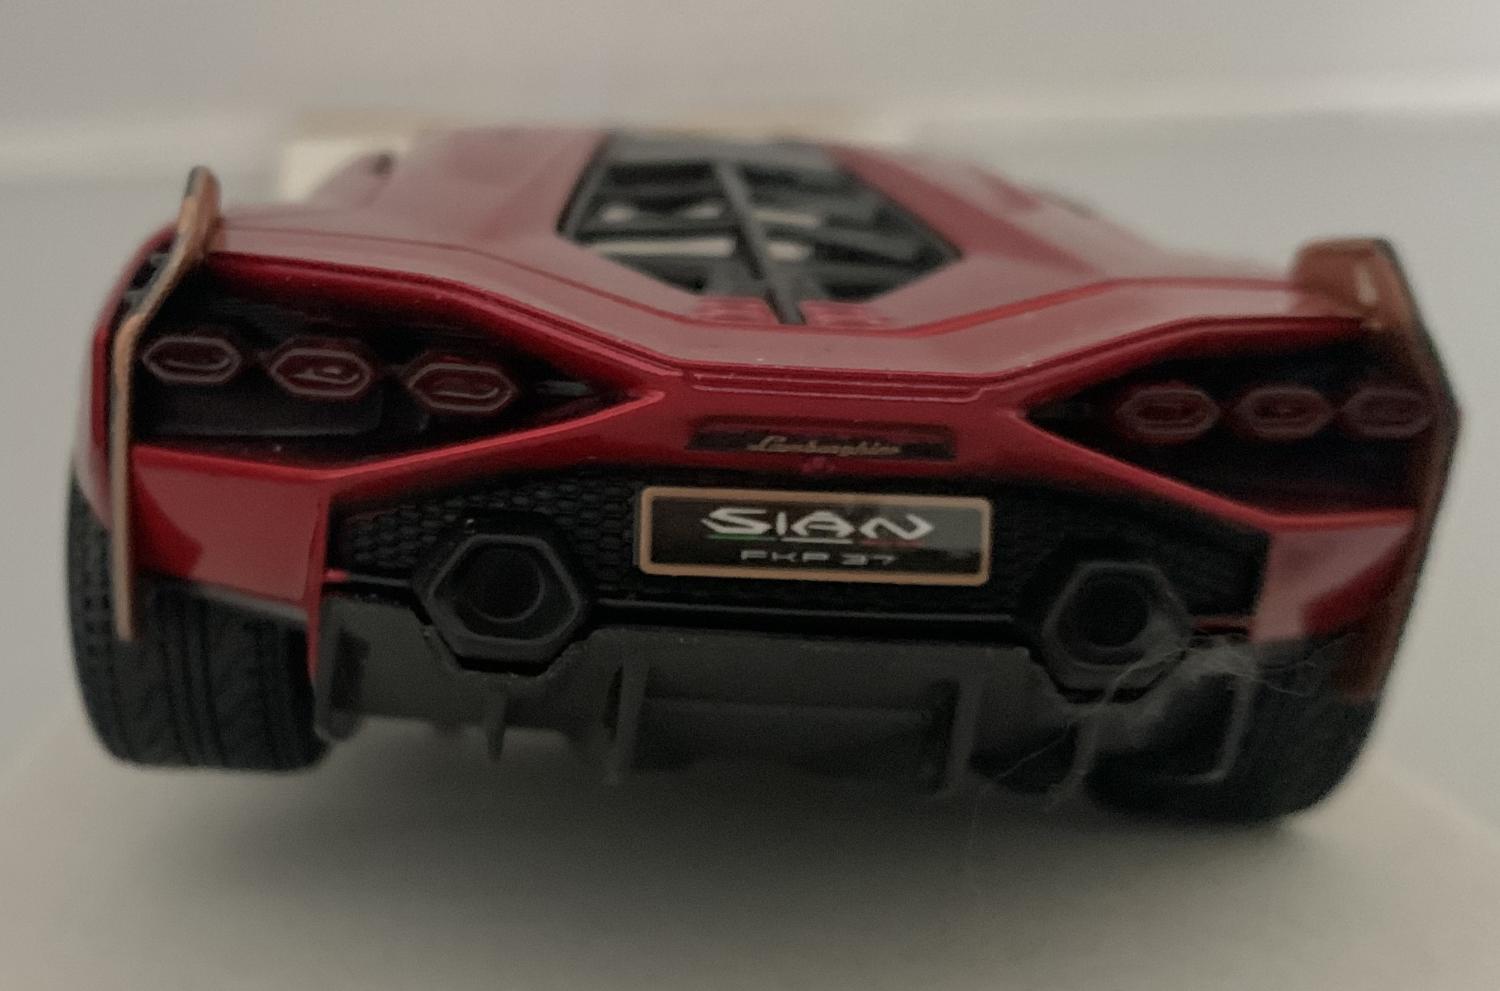 Lamborghini Sian FKP 37 in metallic red 1:24 scale model from Bburago